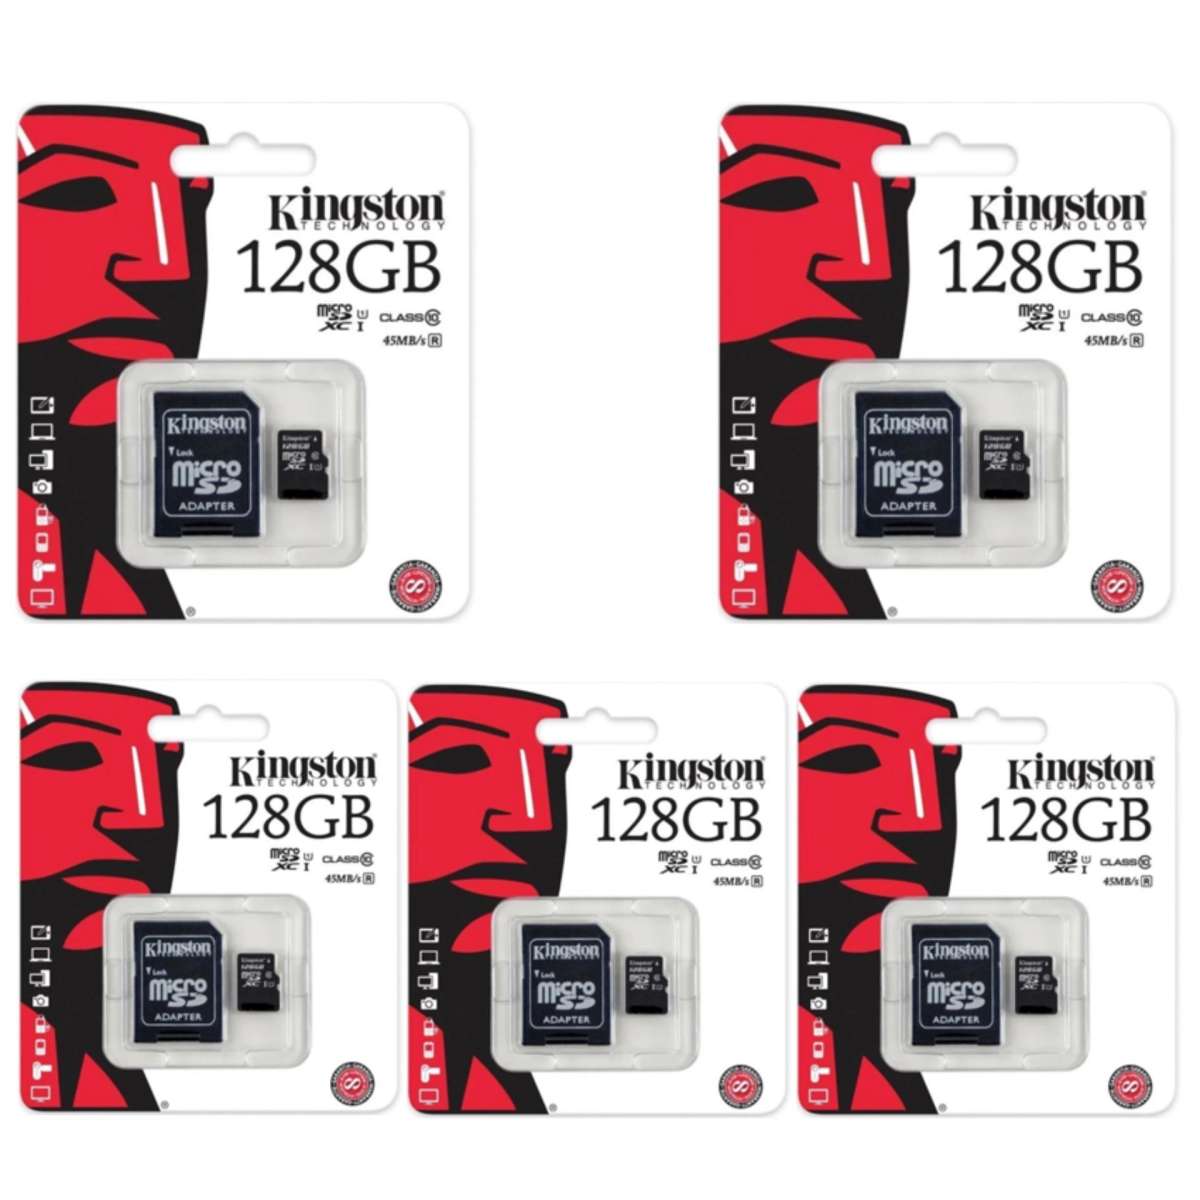 รูปภาพของ Kingston Memory Card Micro SD SDHC 128 GB Class 10 คิงส์ตัน เมมโมรี่การ์ด 128 GB Kingston